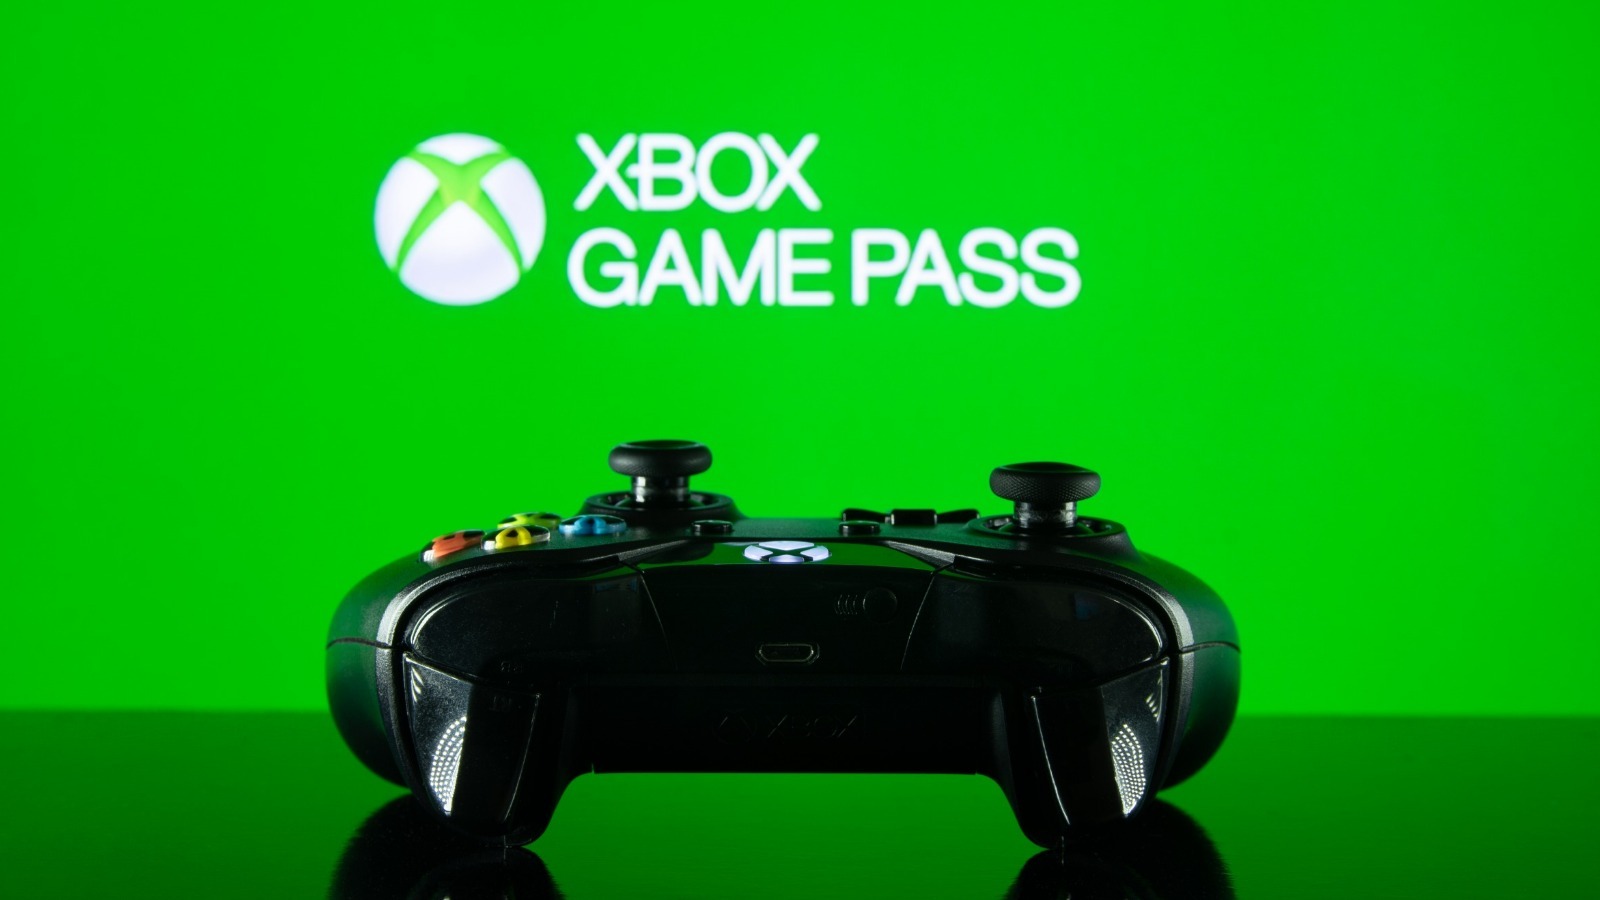 Em breve no Xbox Game Pass: Total War: Warhammer III, Madden NFL 22 e mais  - Xbox Wire em Português